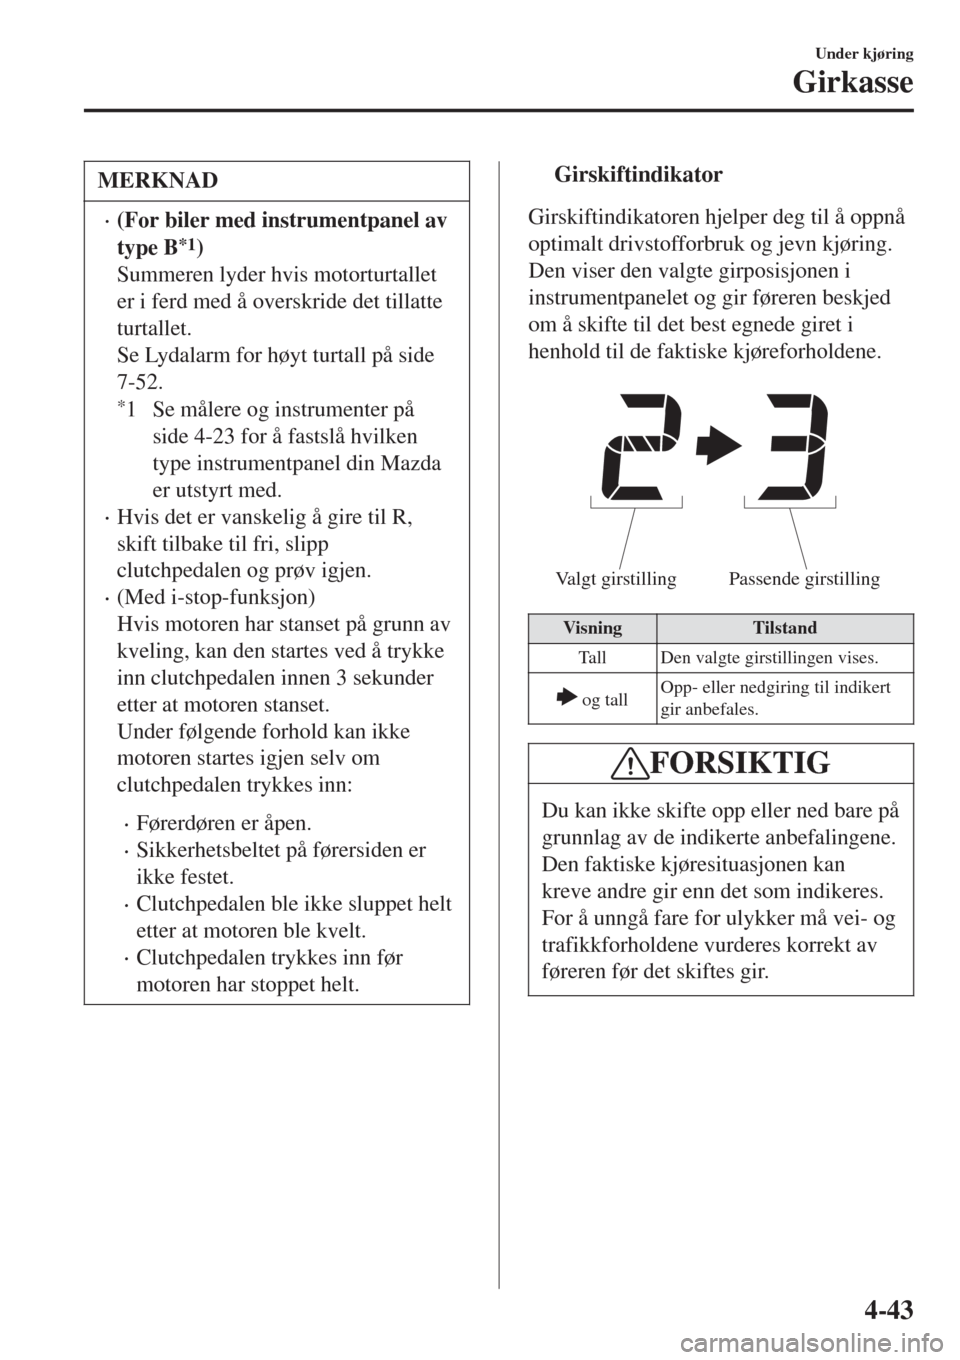 MAZDA MODEL CX-3 2015  Brukerhåndbok (in Norwegian) MERKNAD
•(For biler med instrumentpanel av
type B
*1)
Summeren lyder hvis motorturtallet
er i ferd med å overskride det tillatte
turtallet.
Se Lydalarm for høyt turtall på side
7-52.
*1 Se måler